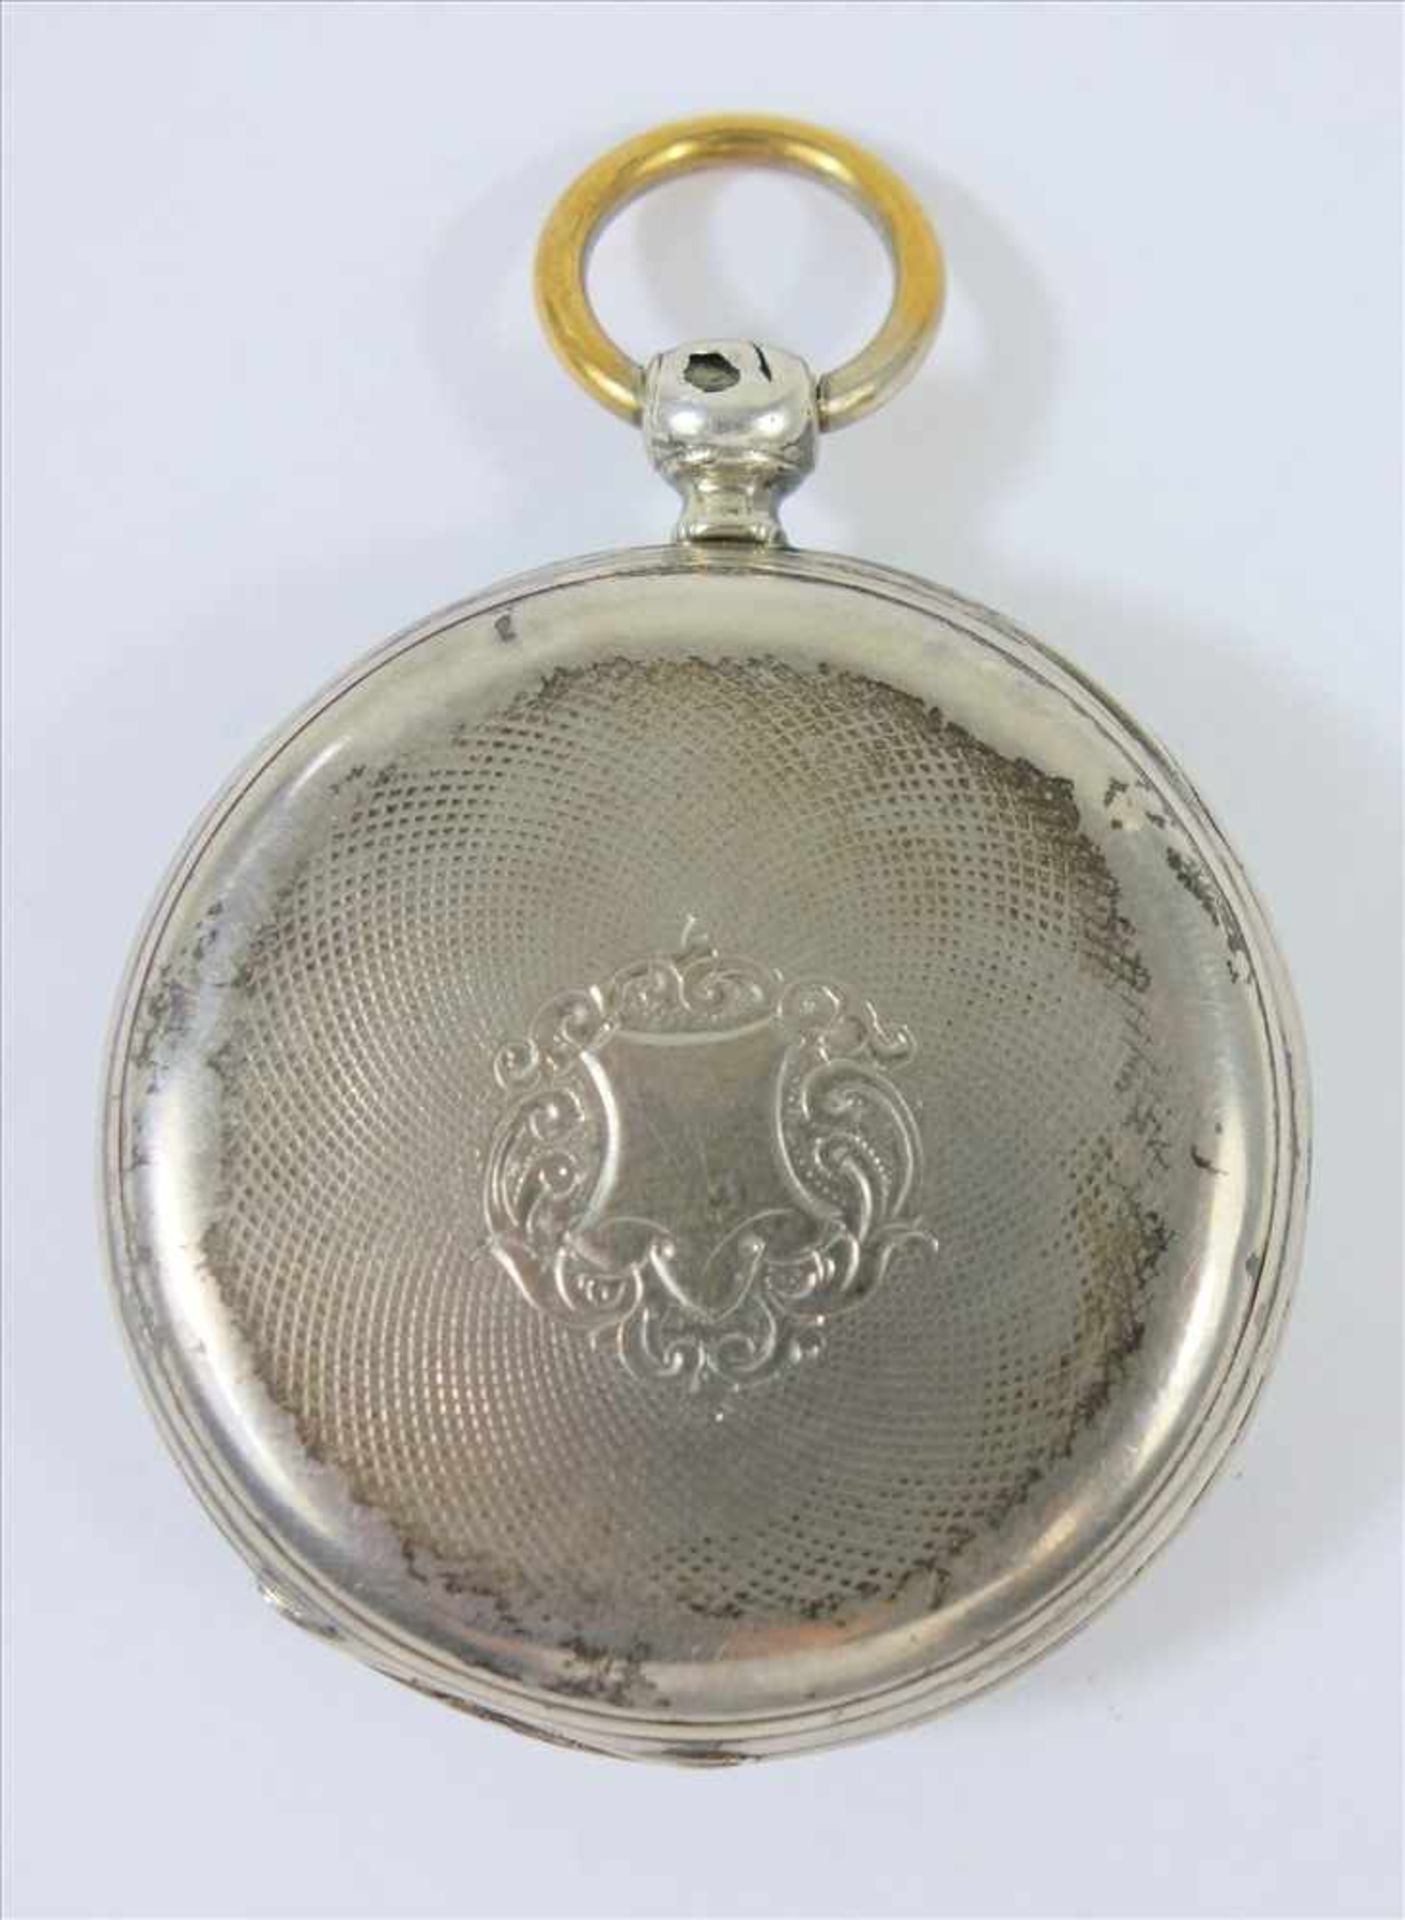 Taschenuhr mit Schlüsselaufzug, Silber, um 1880, rücksseitig guillochiertes Gehäuse mit - Bild 2 aus 2